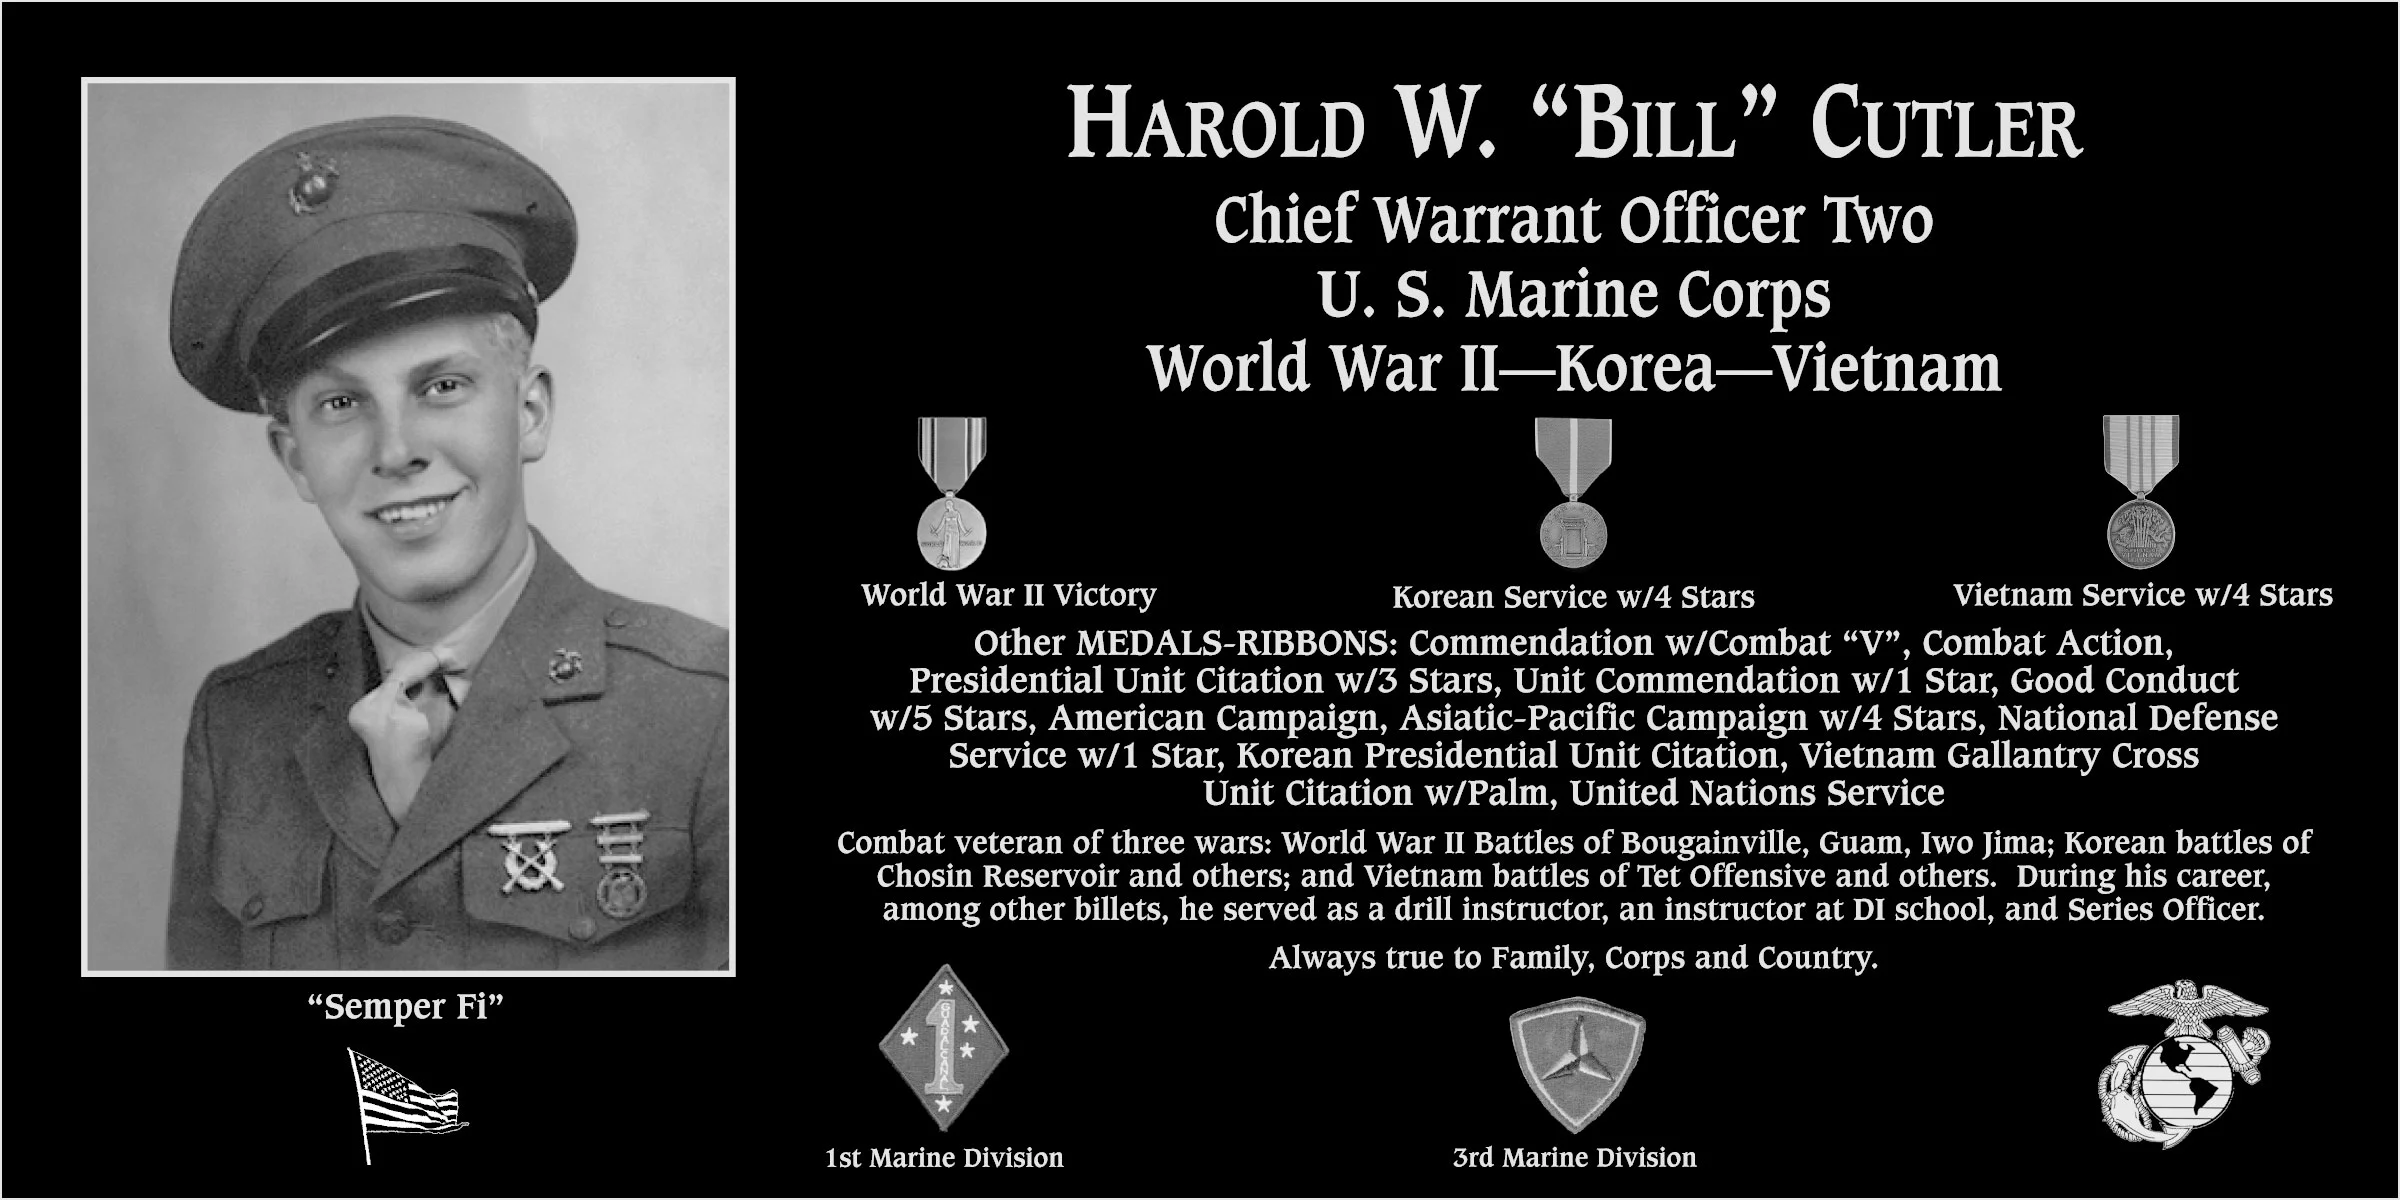 Harold W “Bill” Cutler